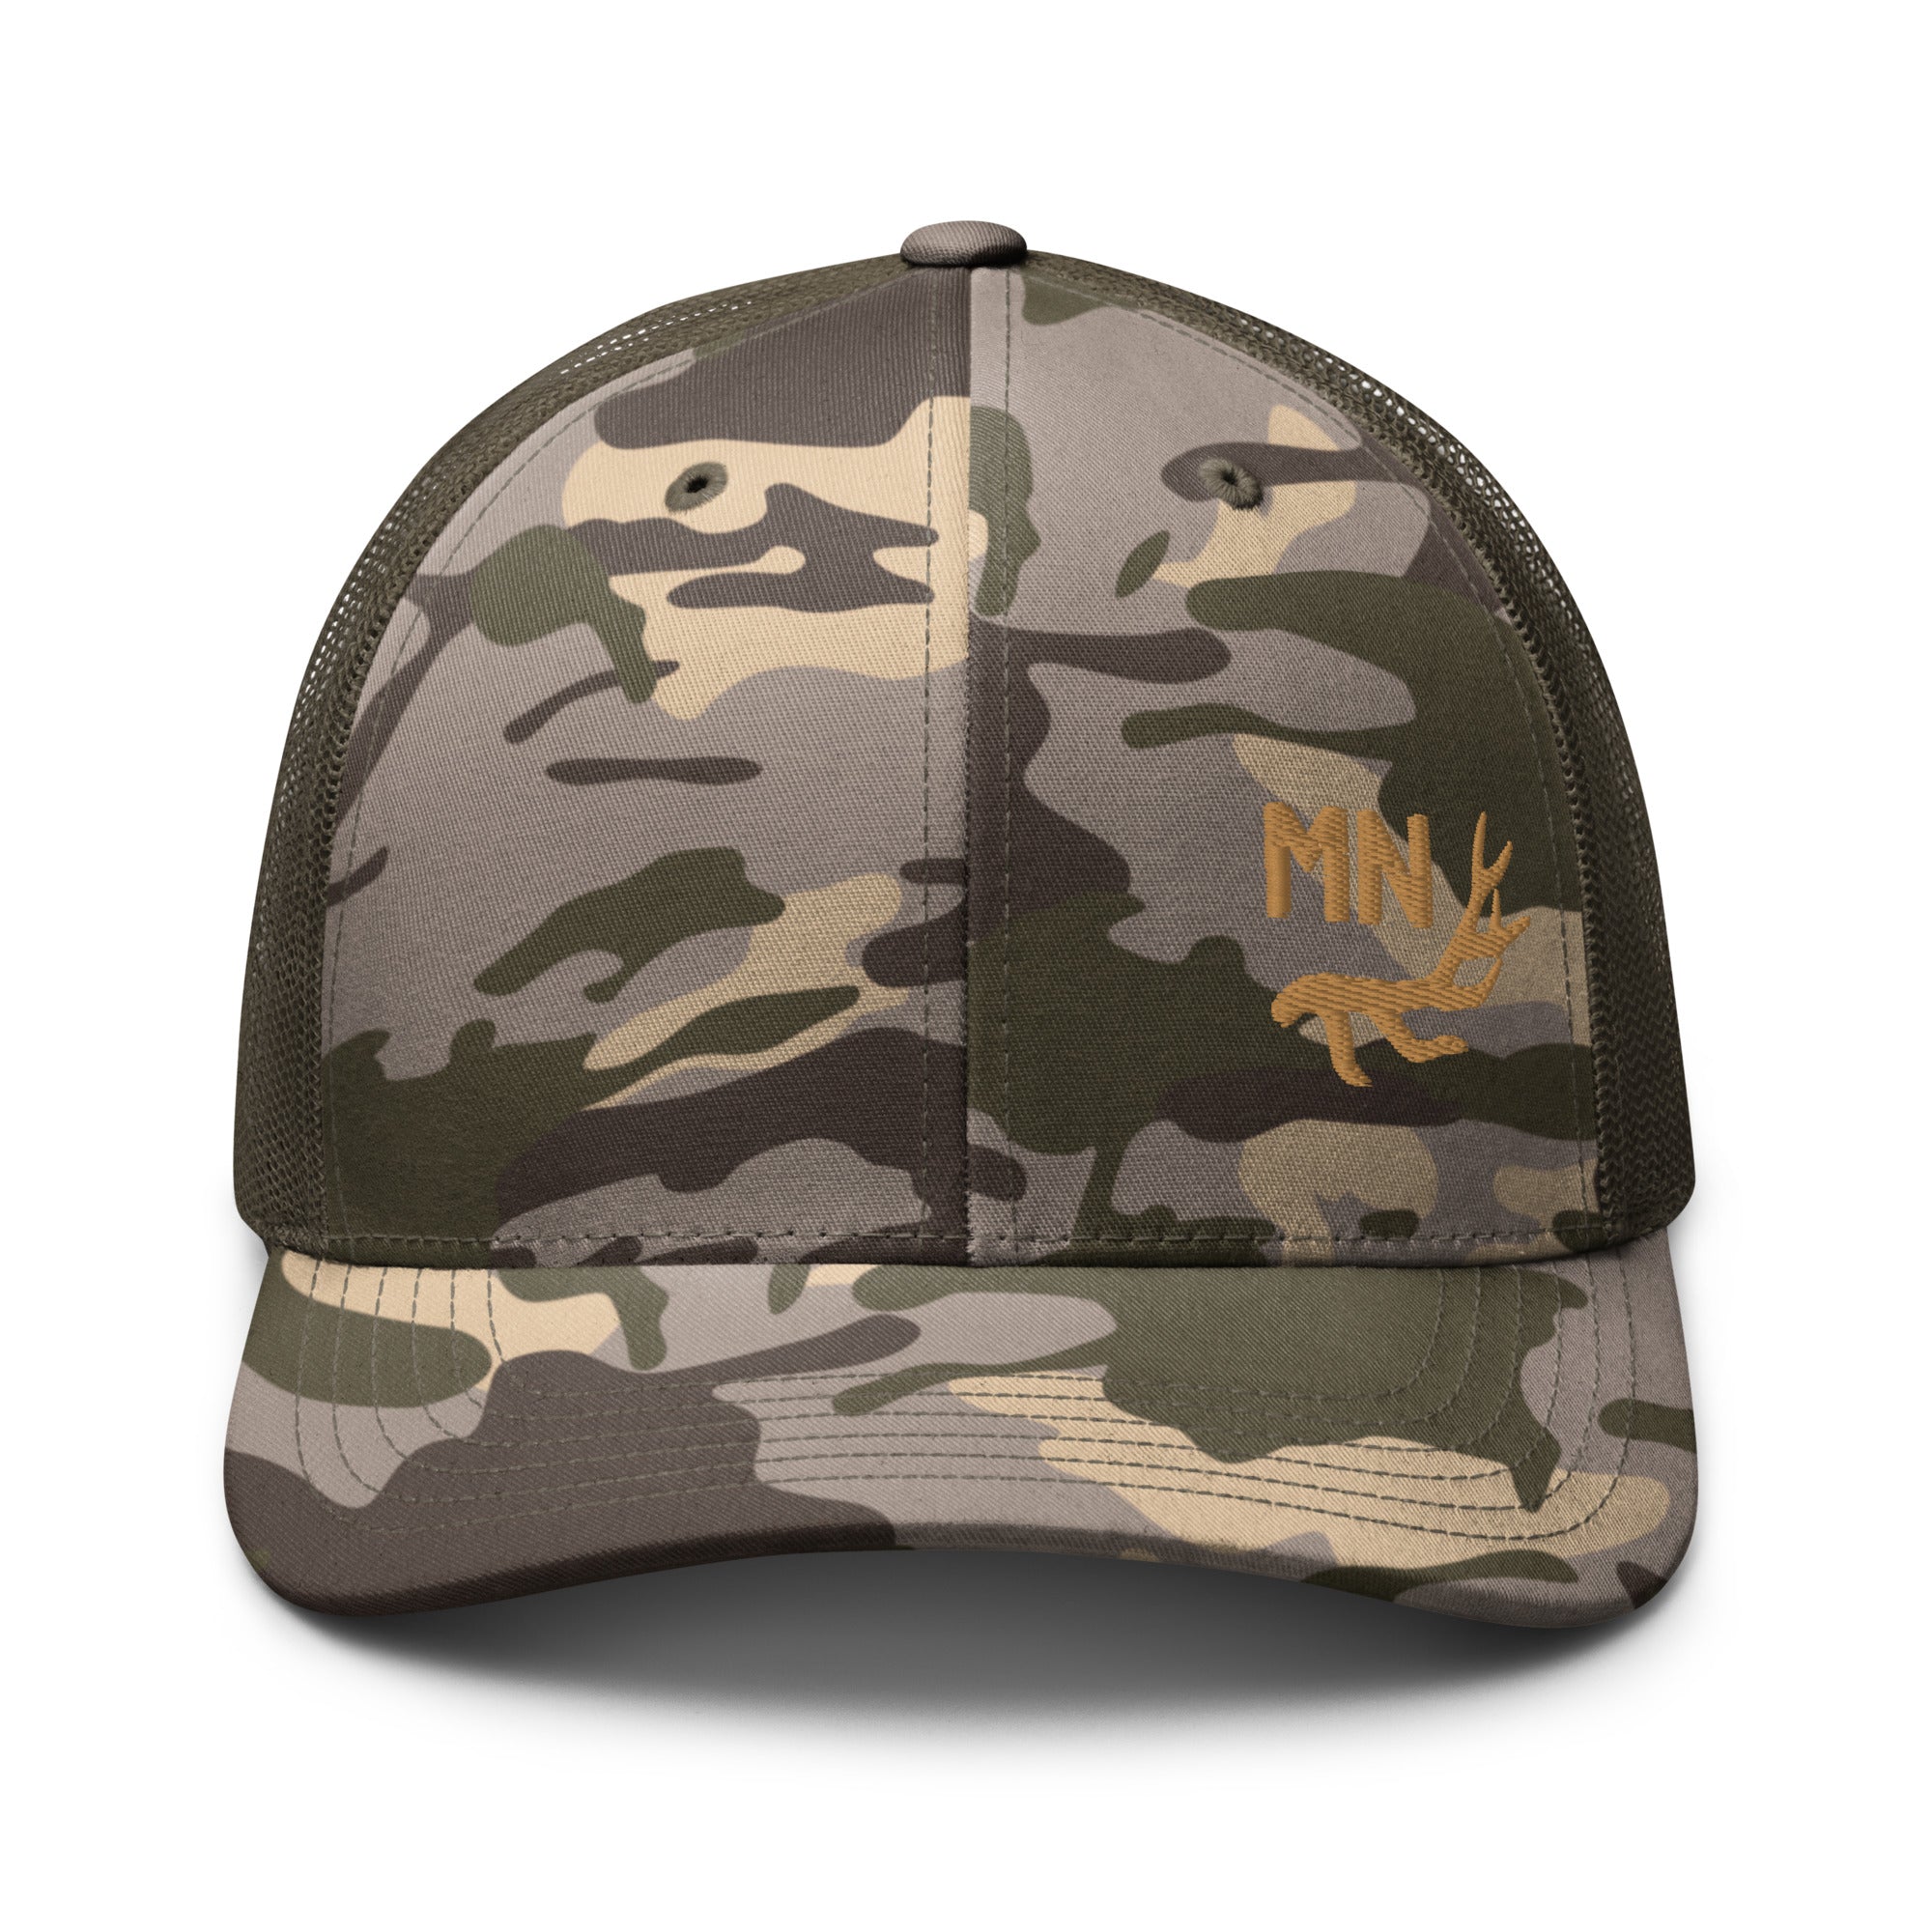 camouflage-trucker-hat-camo-olive-front-655e61ad9f06e.jpg